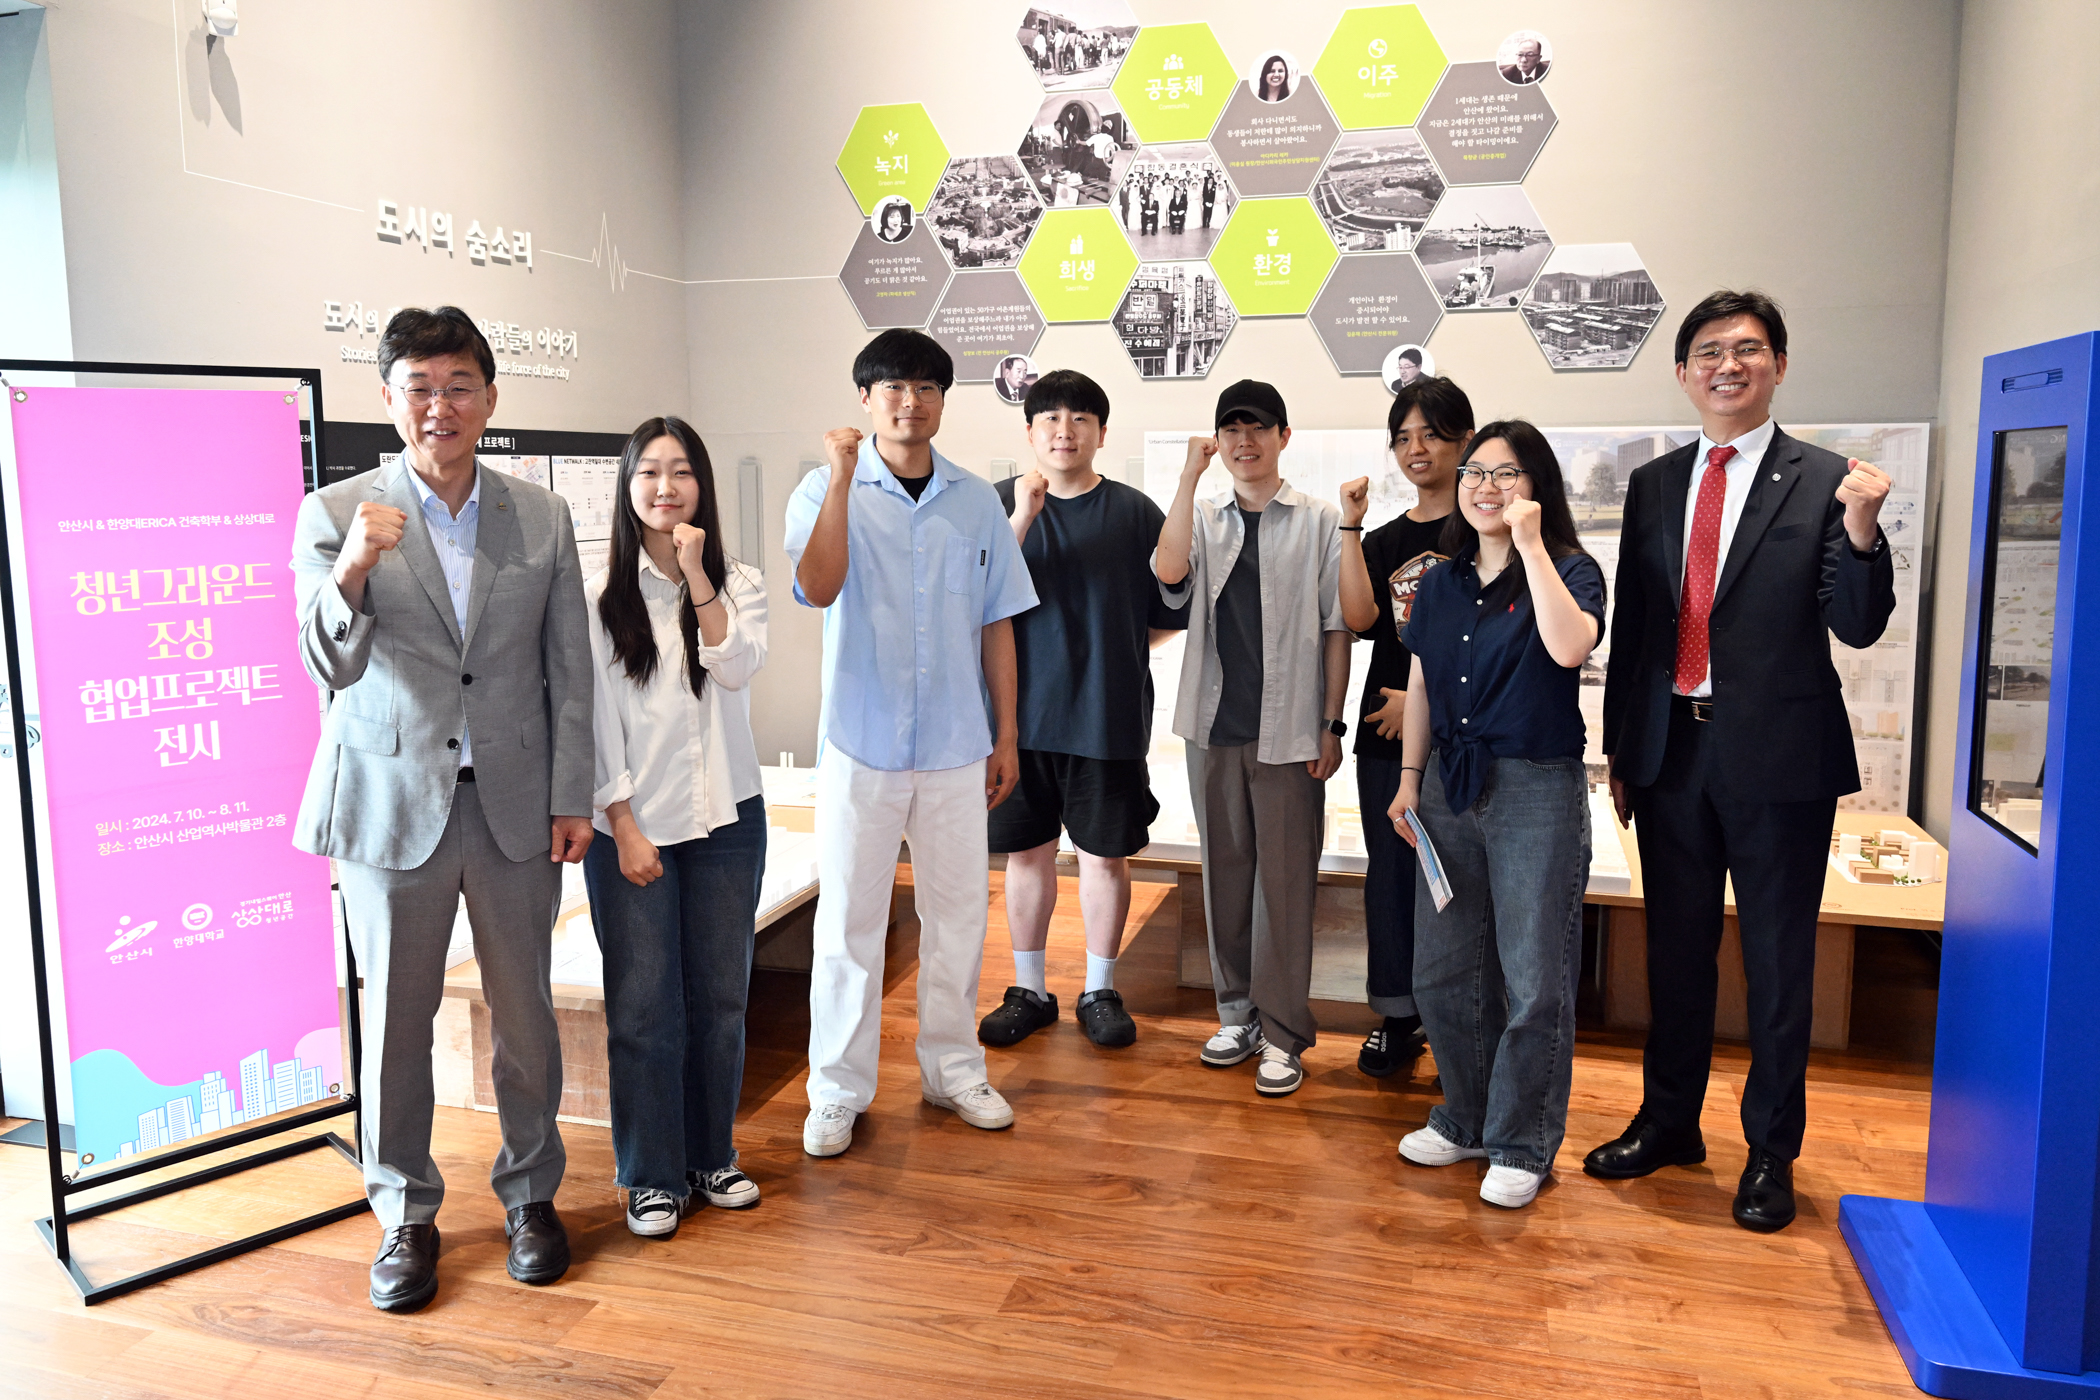 안산시, 청년 그라운드 조성 및 도시개발 구상 프로젝트 전시 개최